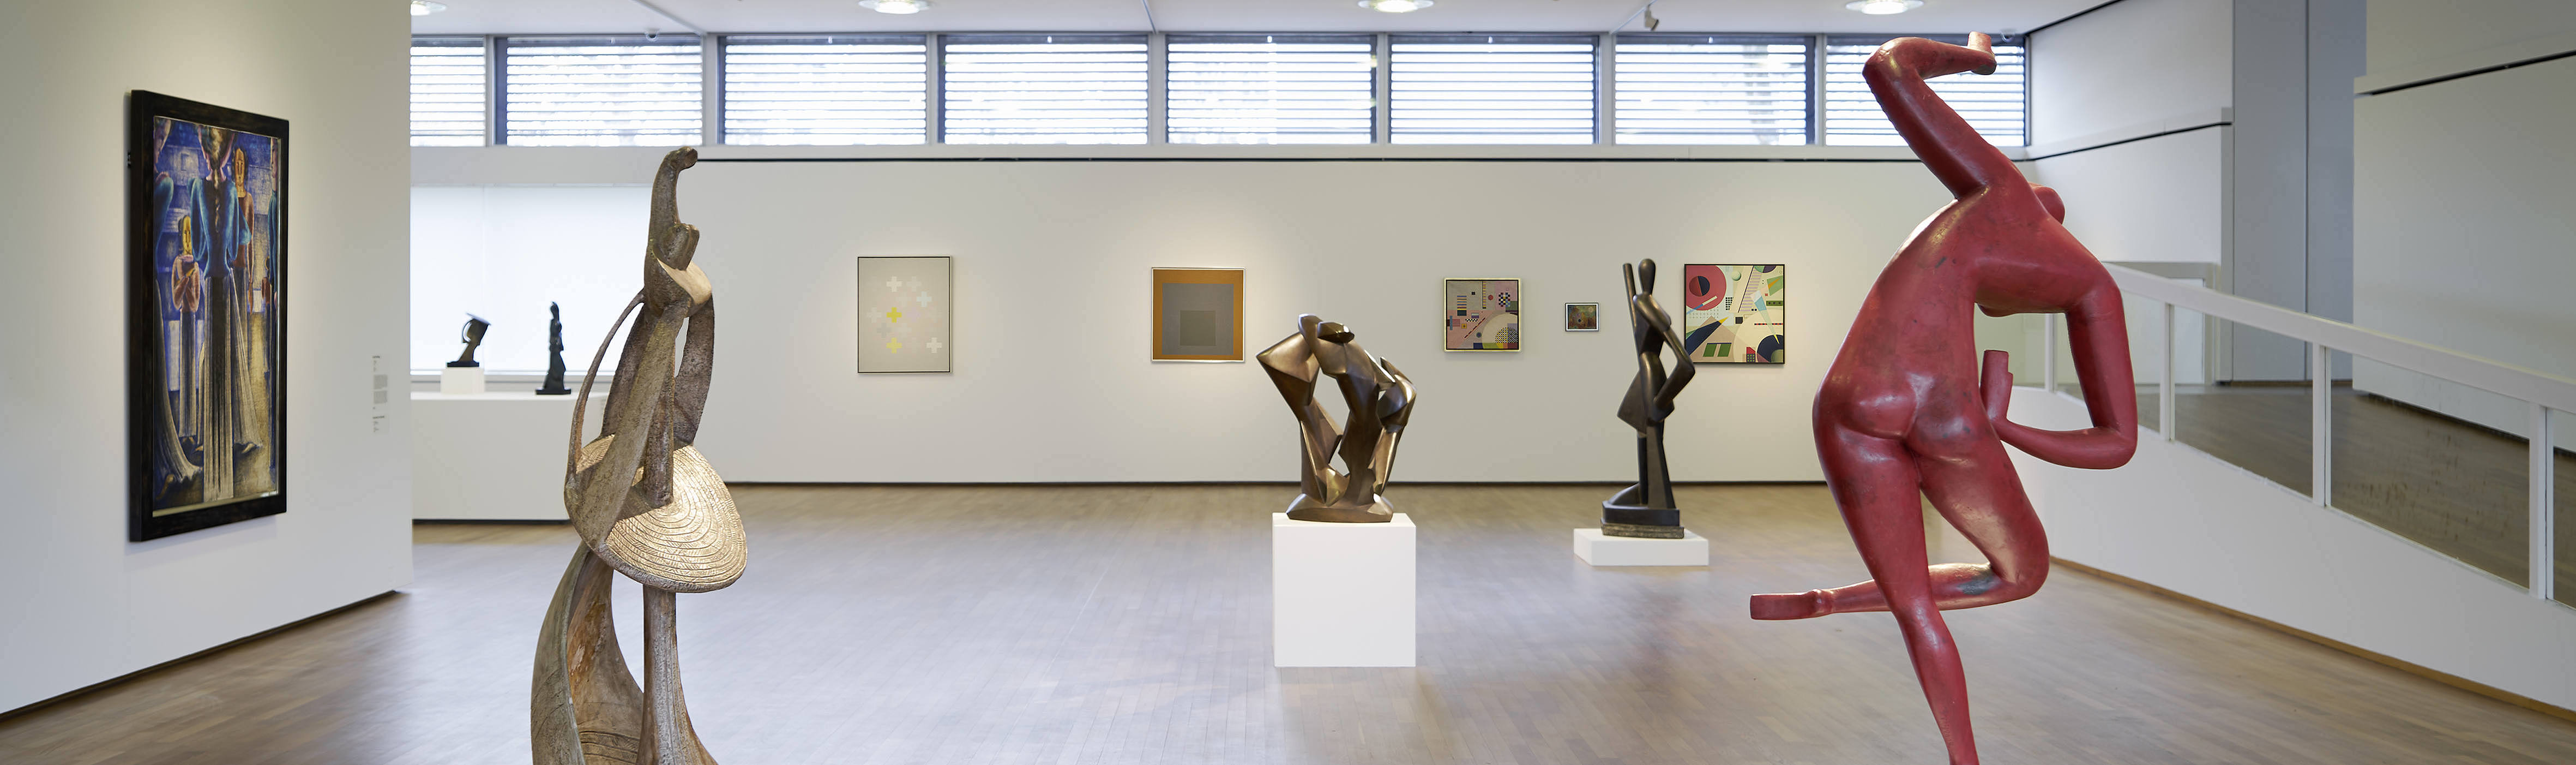 Moderne Galerie Ausstellungsraum mit Skulpturen